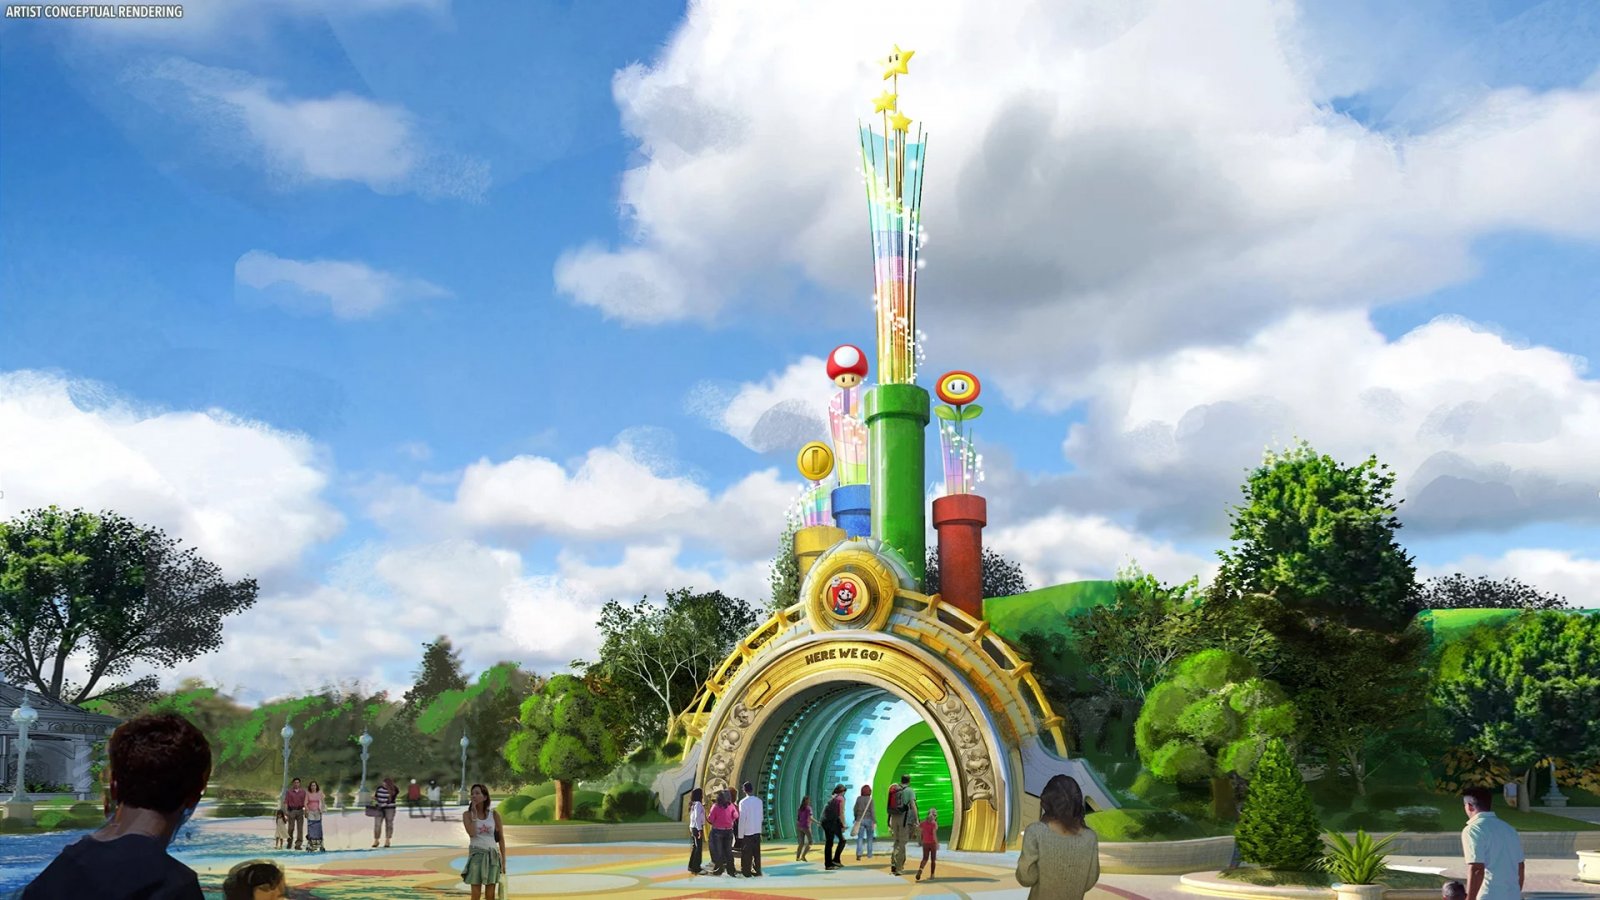 Super Nintendo World Orlando, spuntano le prime immagini del nuovo parco tematico